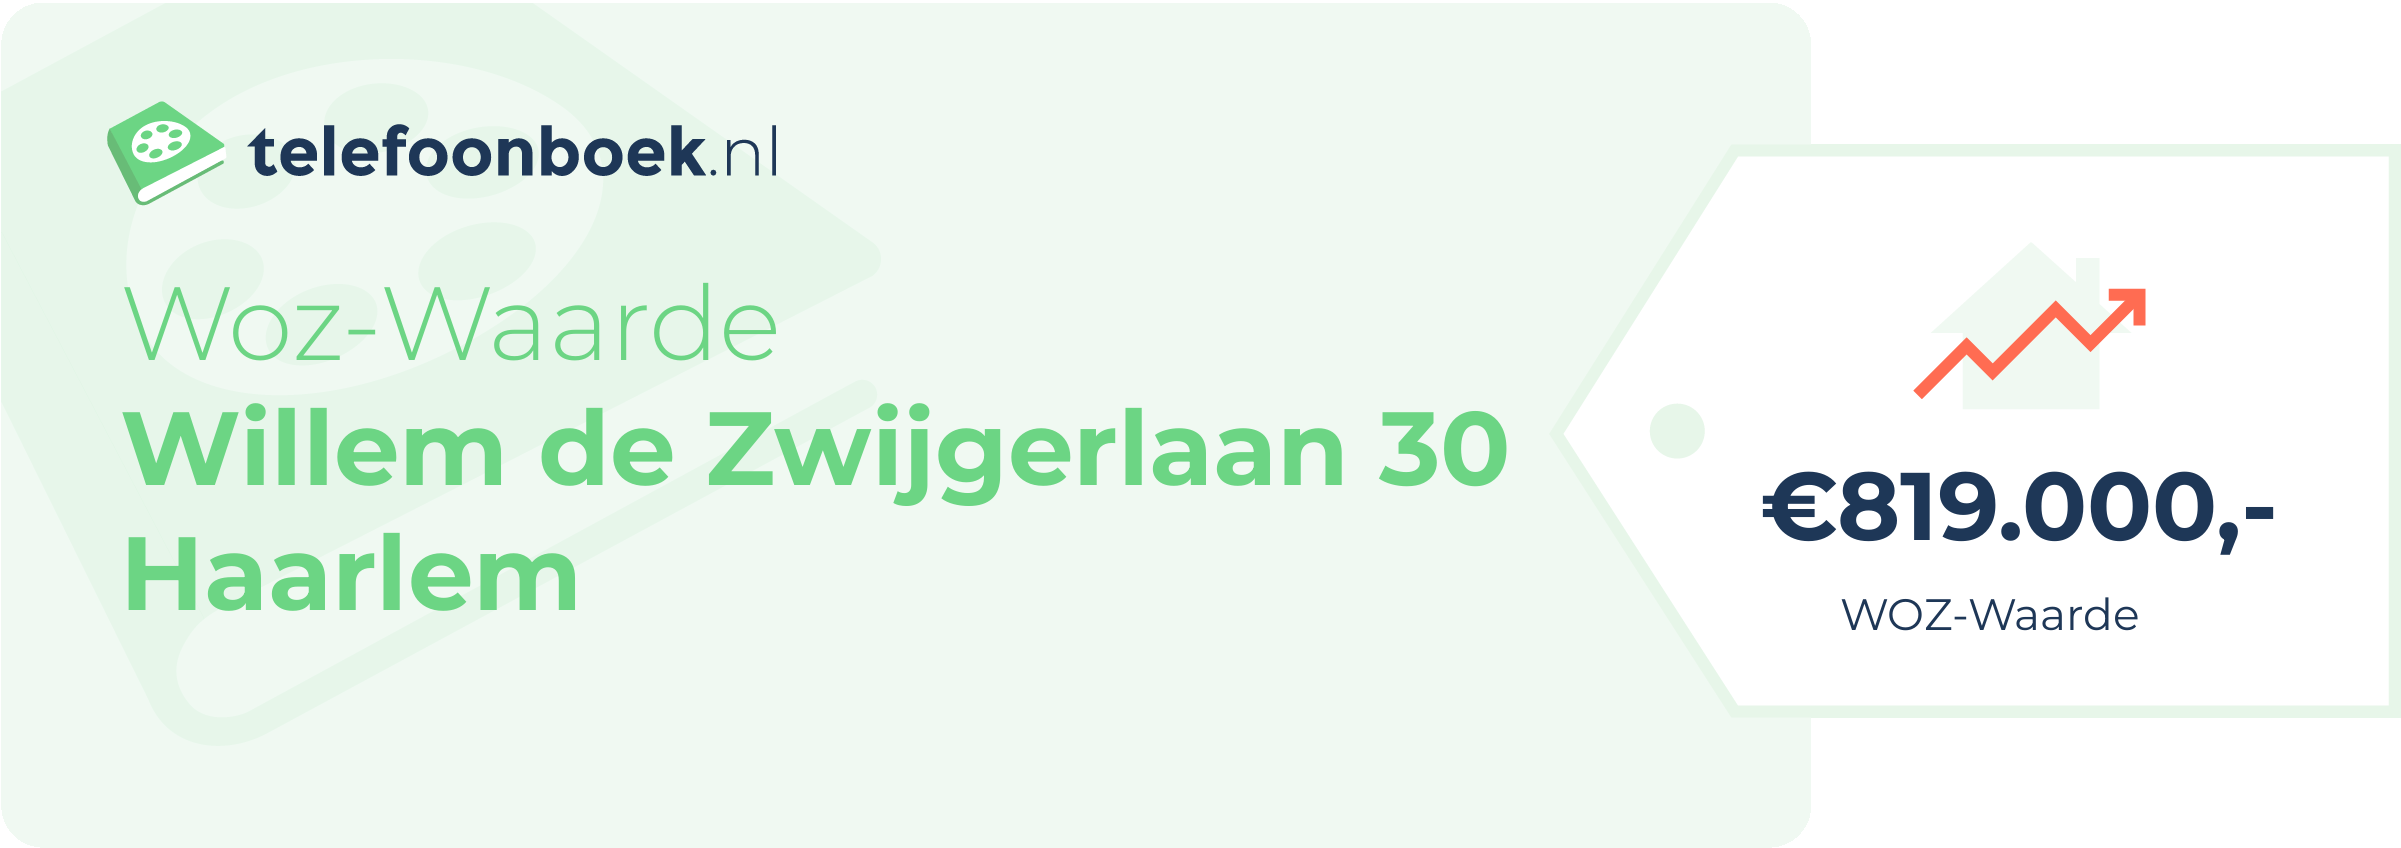 WOZ-waarde Willem De Zwijgerlaan 30 Haarlem